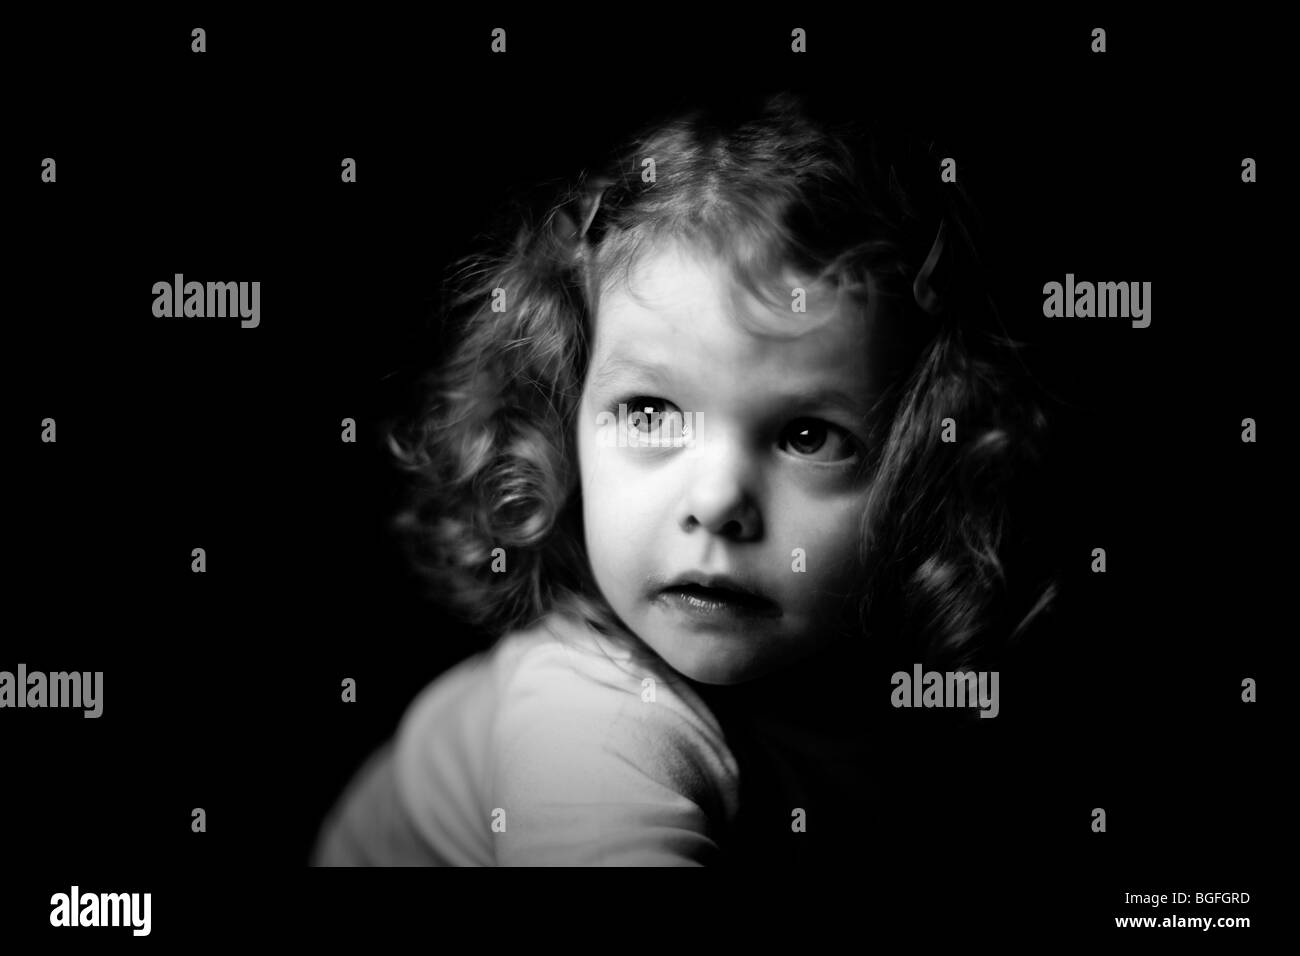 Fotografía en blanco y negro de una niña de tres años en una iluminación espectacular. Fondo negro. Foto de stock